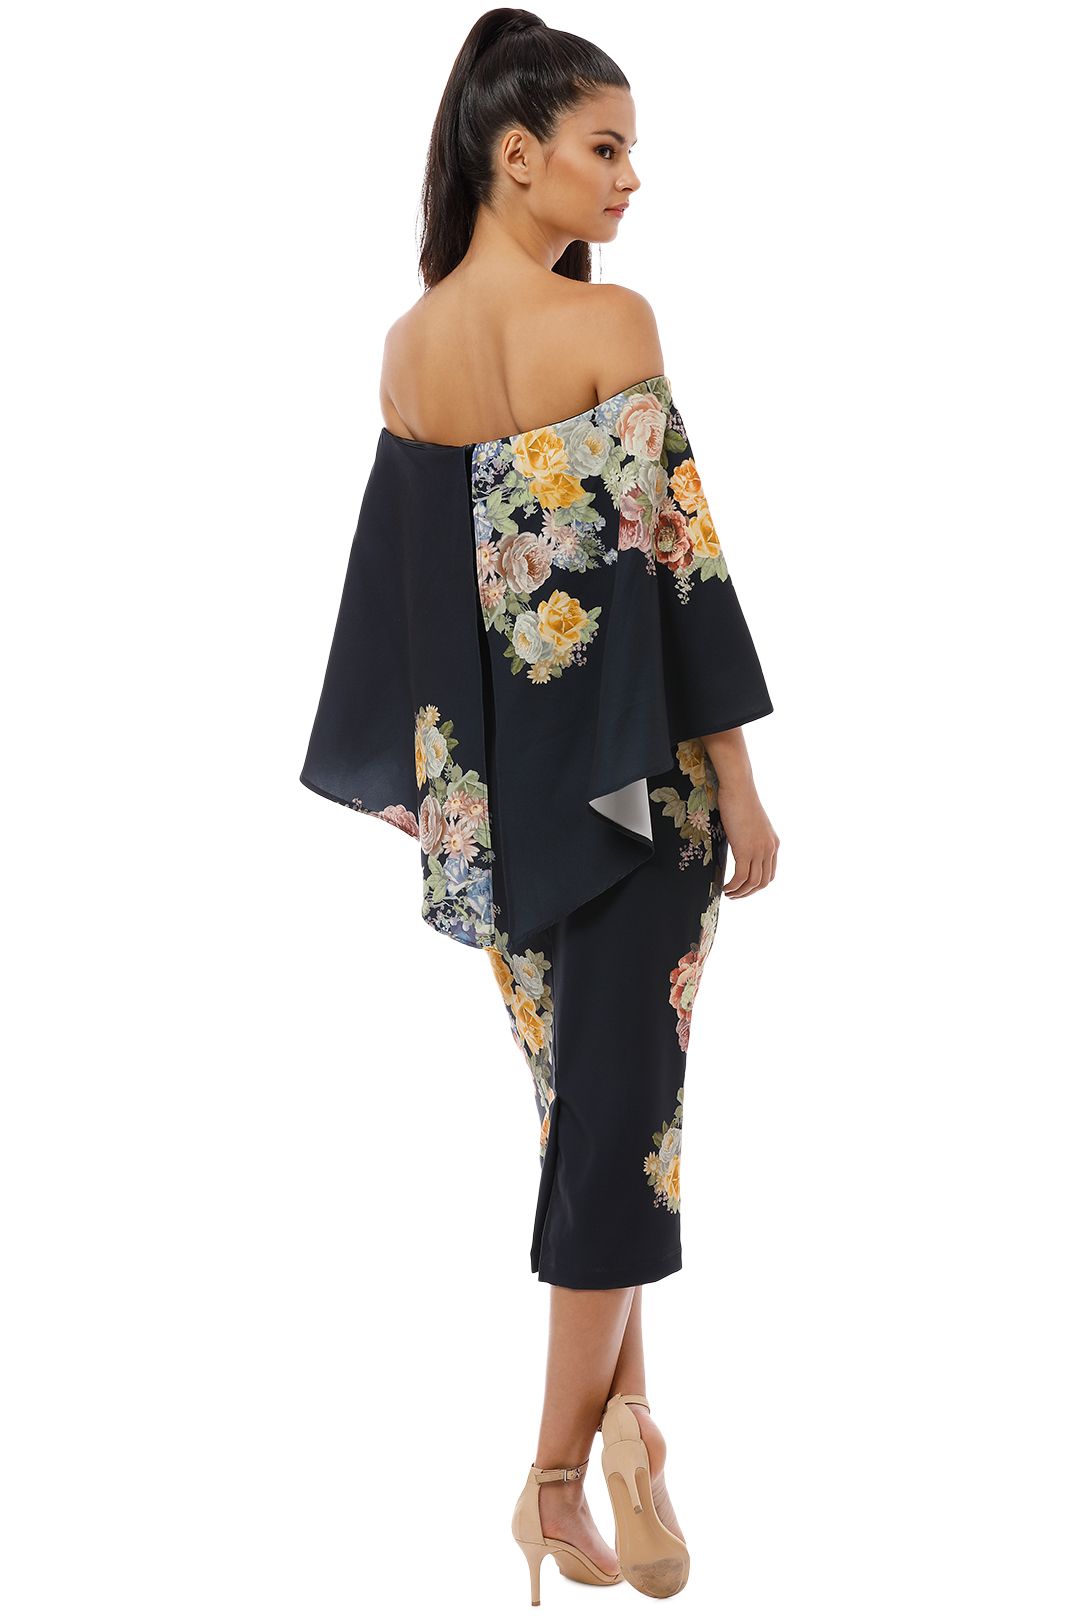 Pasduchas - Flower Garden Shoulder Midi Dress - Black - Back